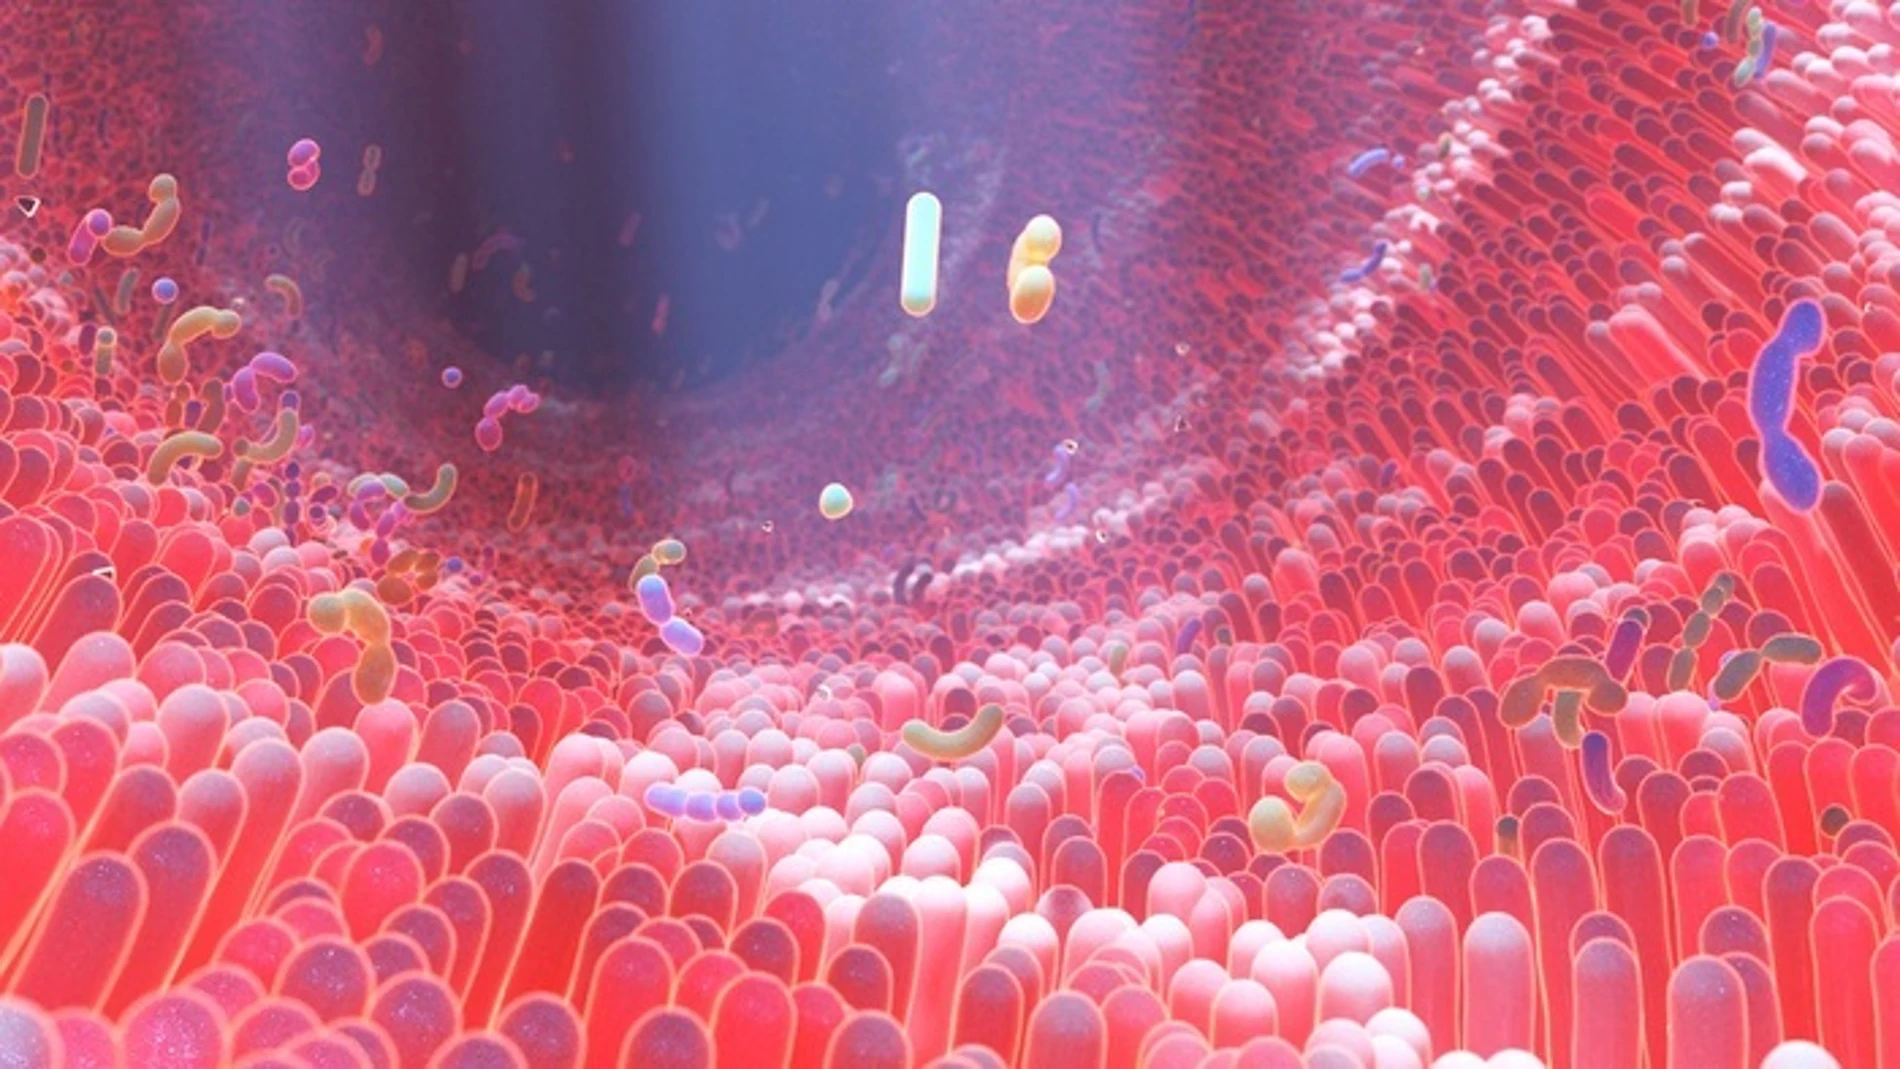 Representación en 3D del microbioma del intestino humano donde residen diversas bacterias.